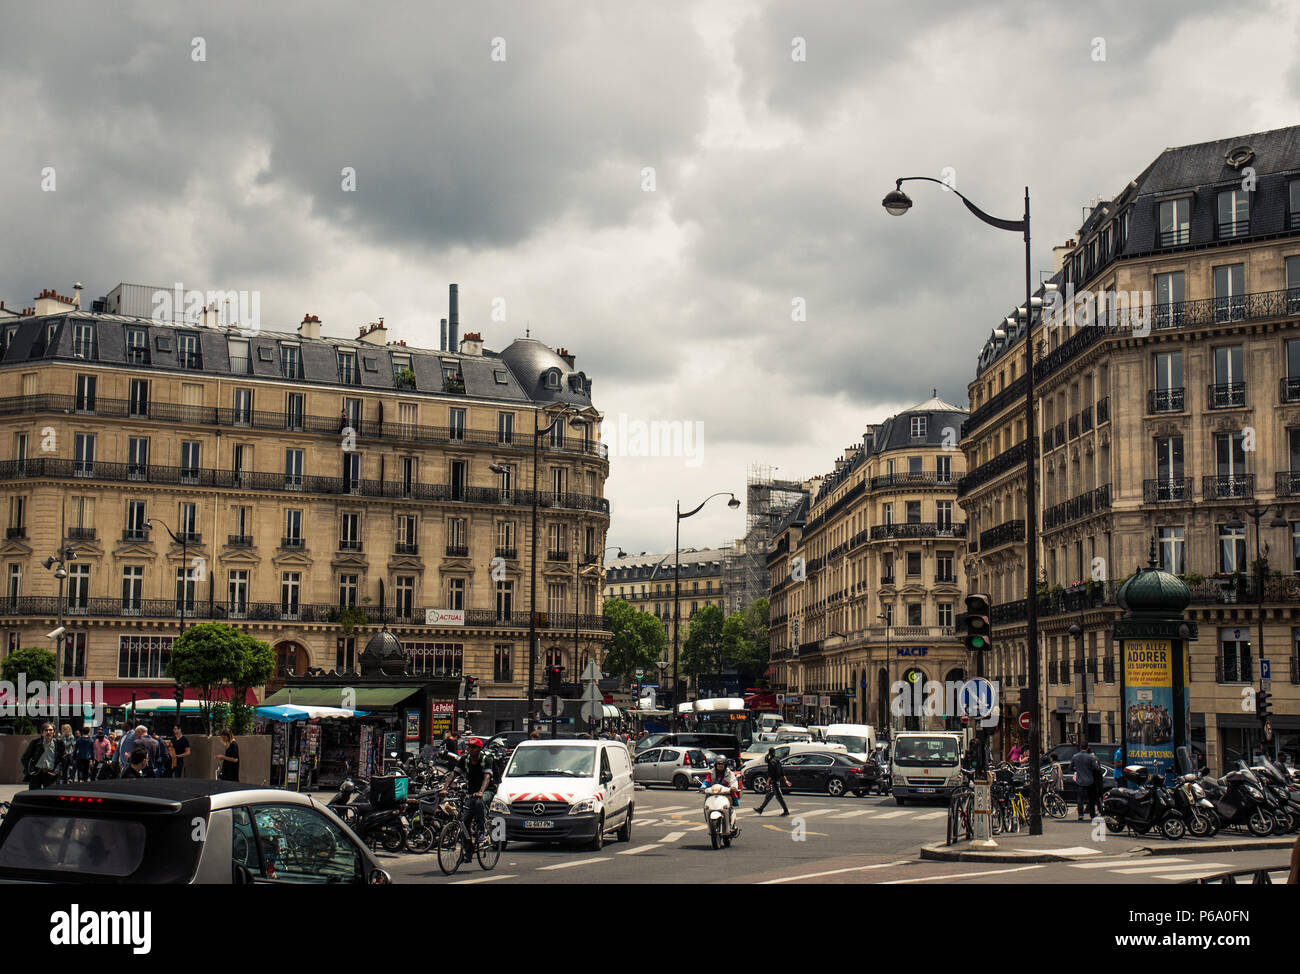 Appartamento a Parigi edifici nell'Haussmann-style circondano una strada trafficata in Parigi, Francia. Foto Stock